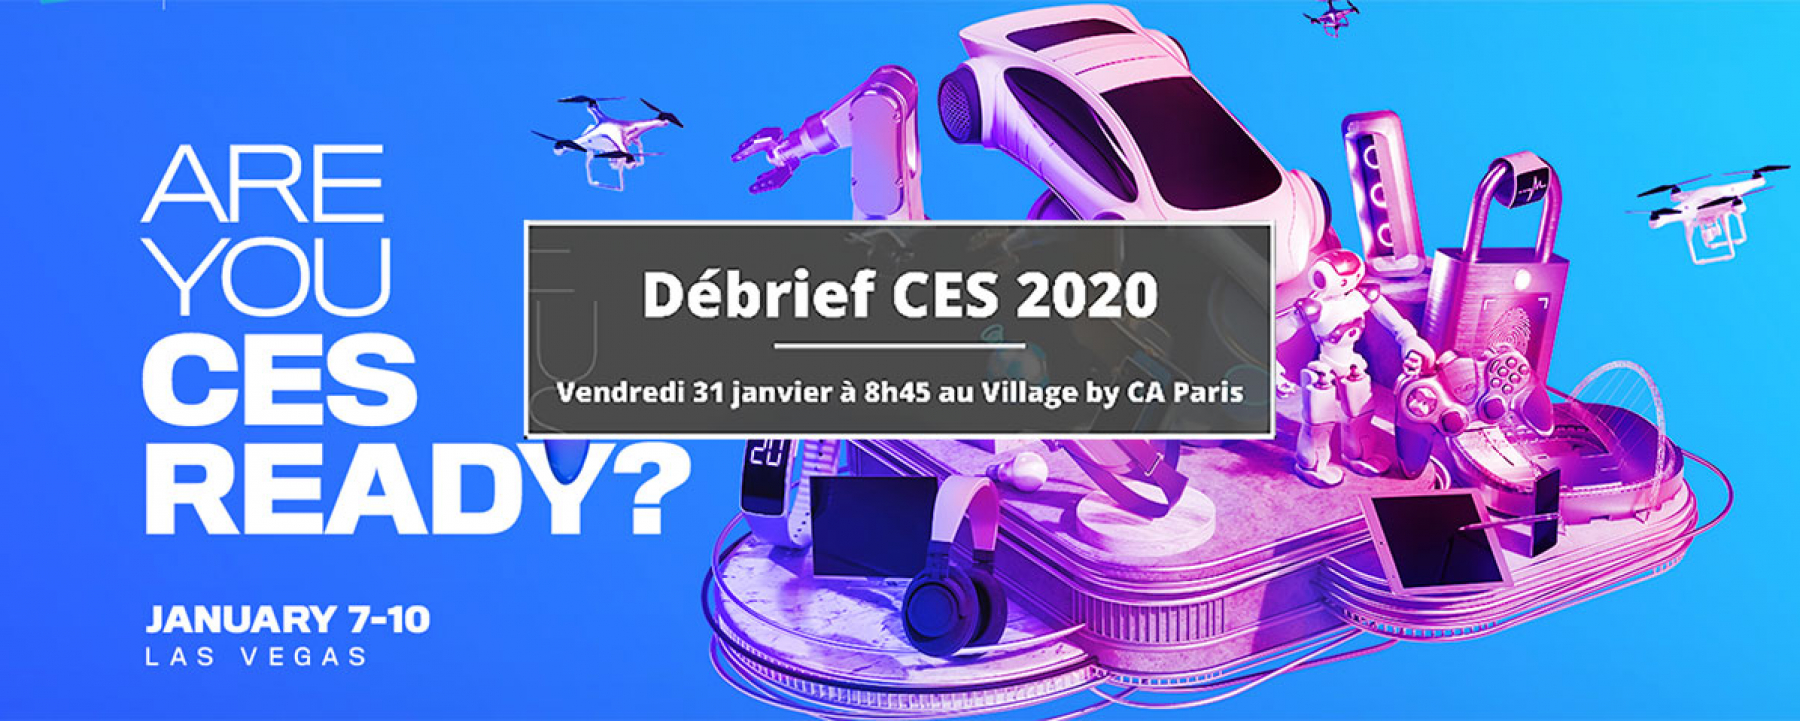 Debrief CES 2020 Village by CA